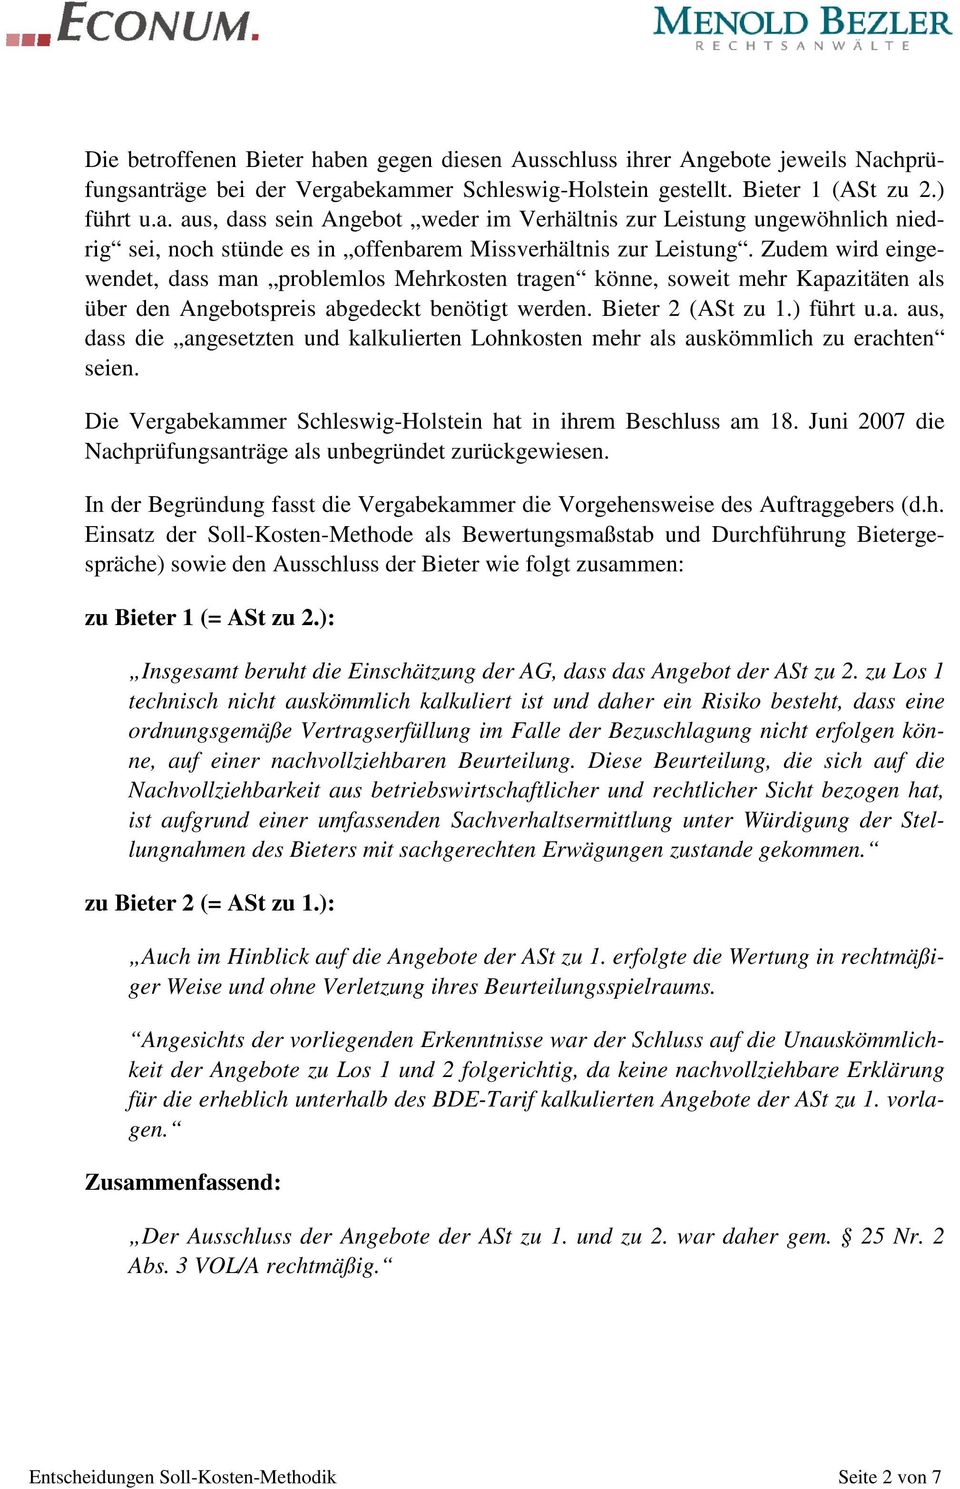 Die Vergabekammer Schleswig-Holstein hat in ihrem Beschluss am 18. Juni 2007 die Nachprüfungsanträge als unbegründet zurückgewiesen.